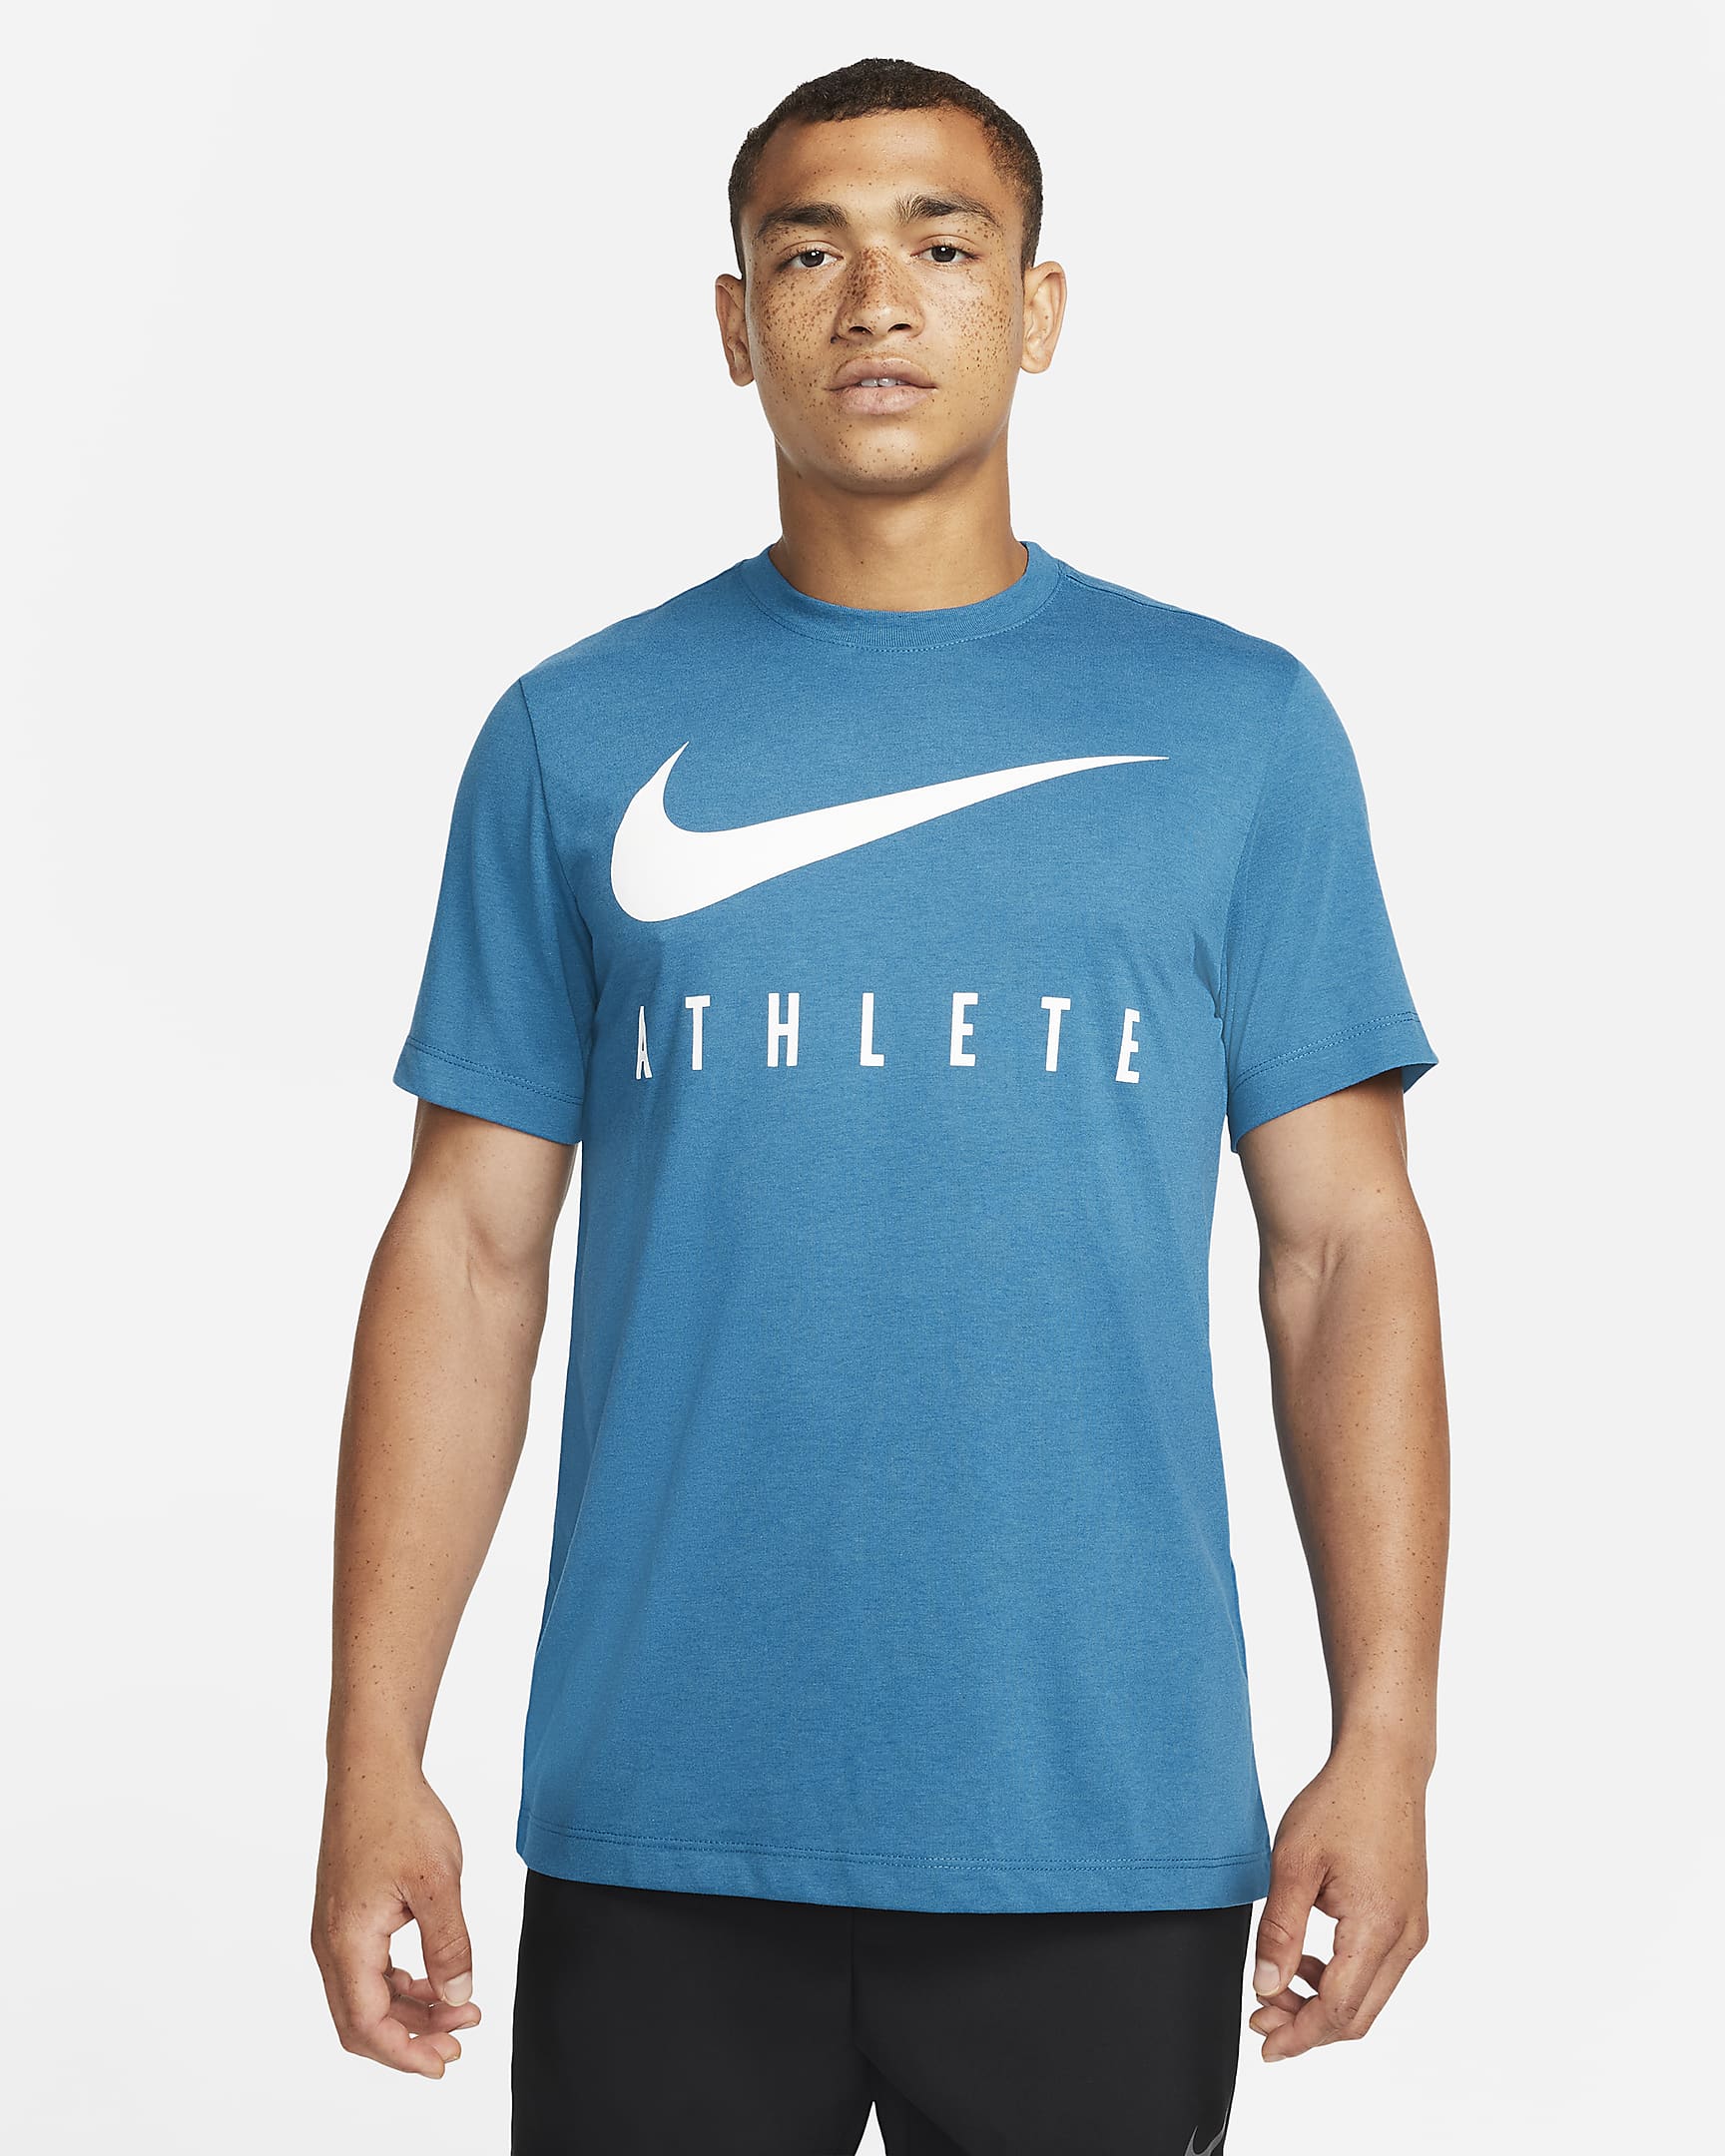 Nike Dri-FIT Men's Training T-Shirt. Nike CZ